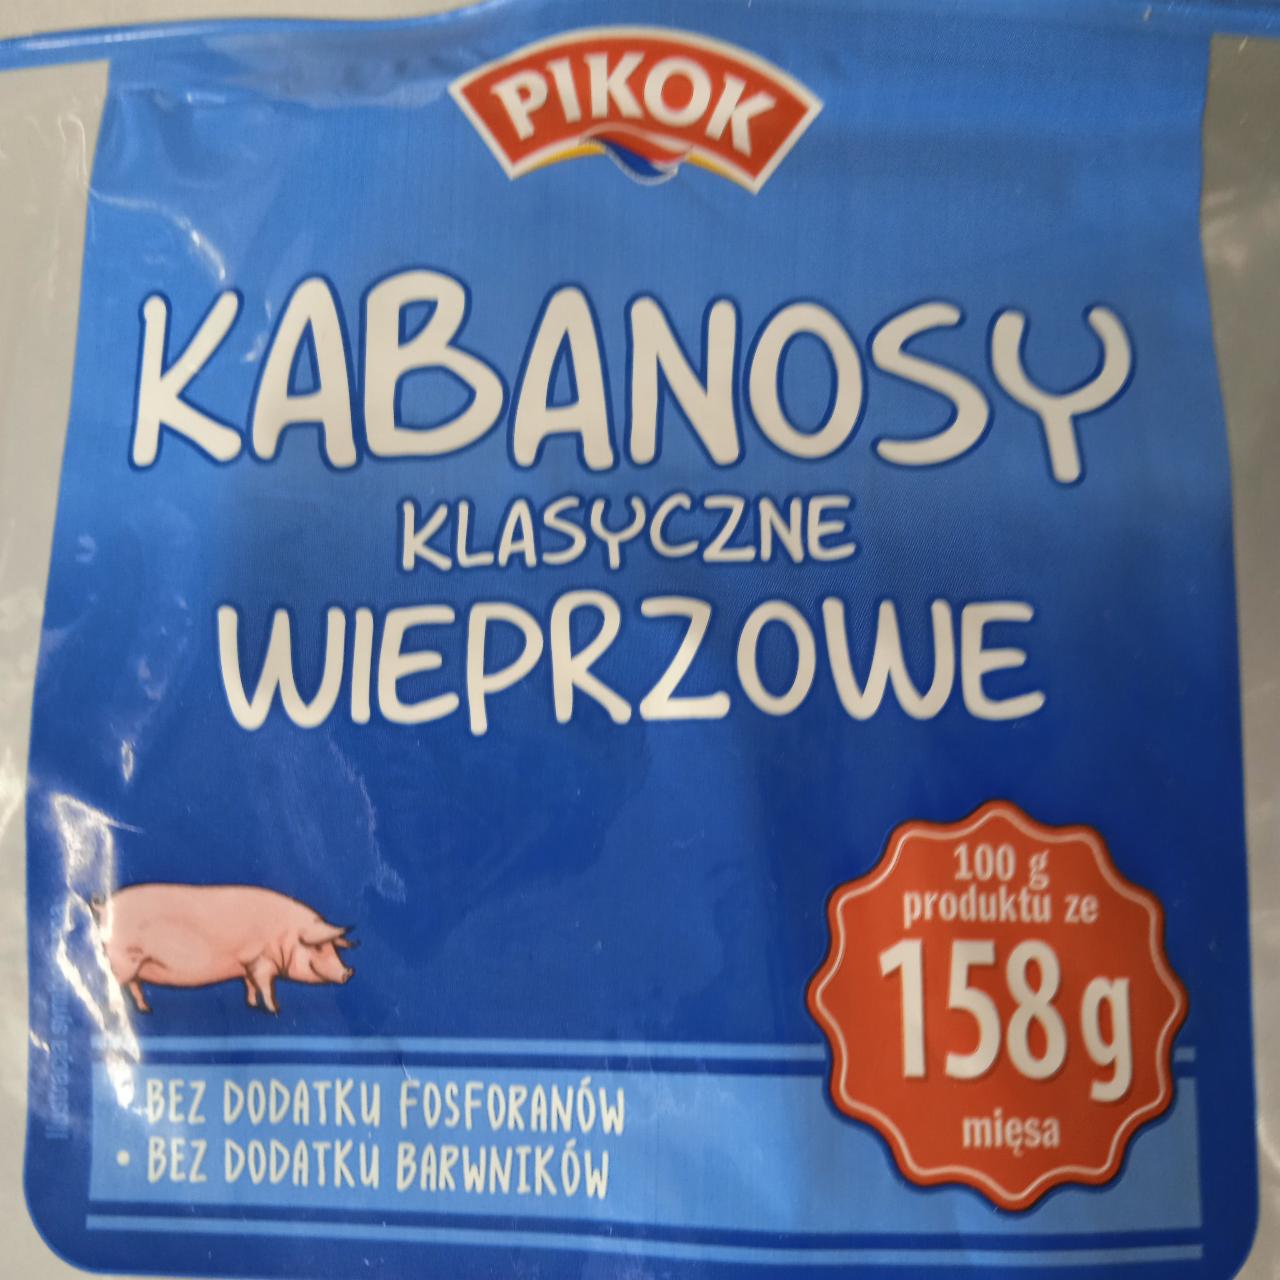 Zdjęcia - Kabanosy klasyczne wieprzowe Pikok